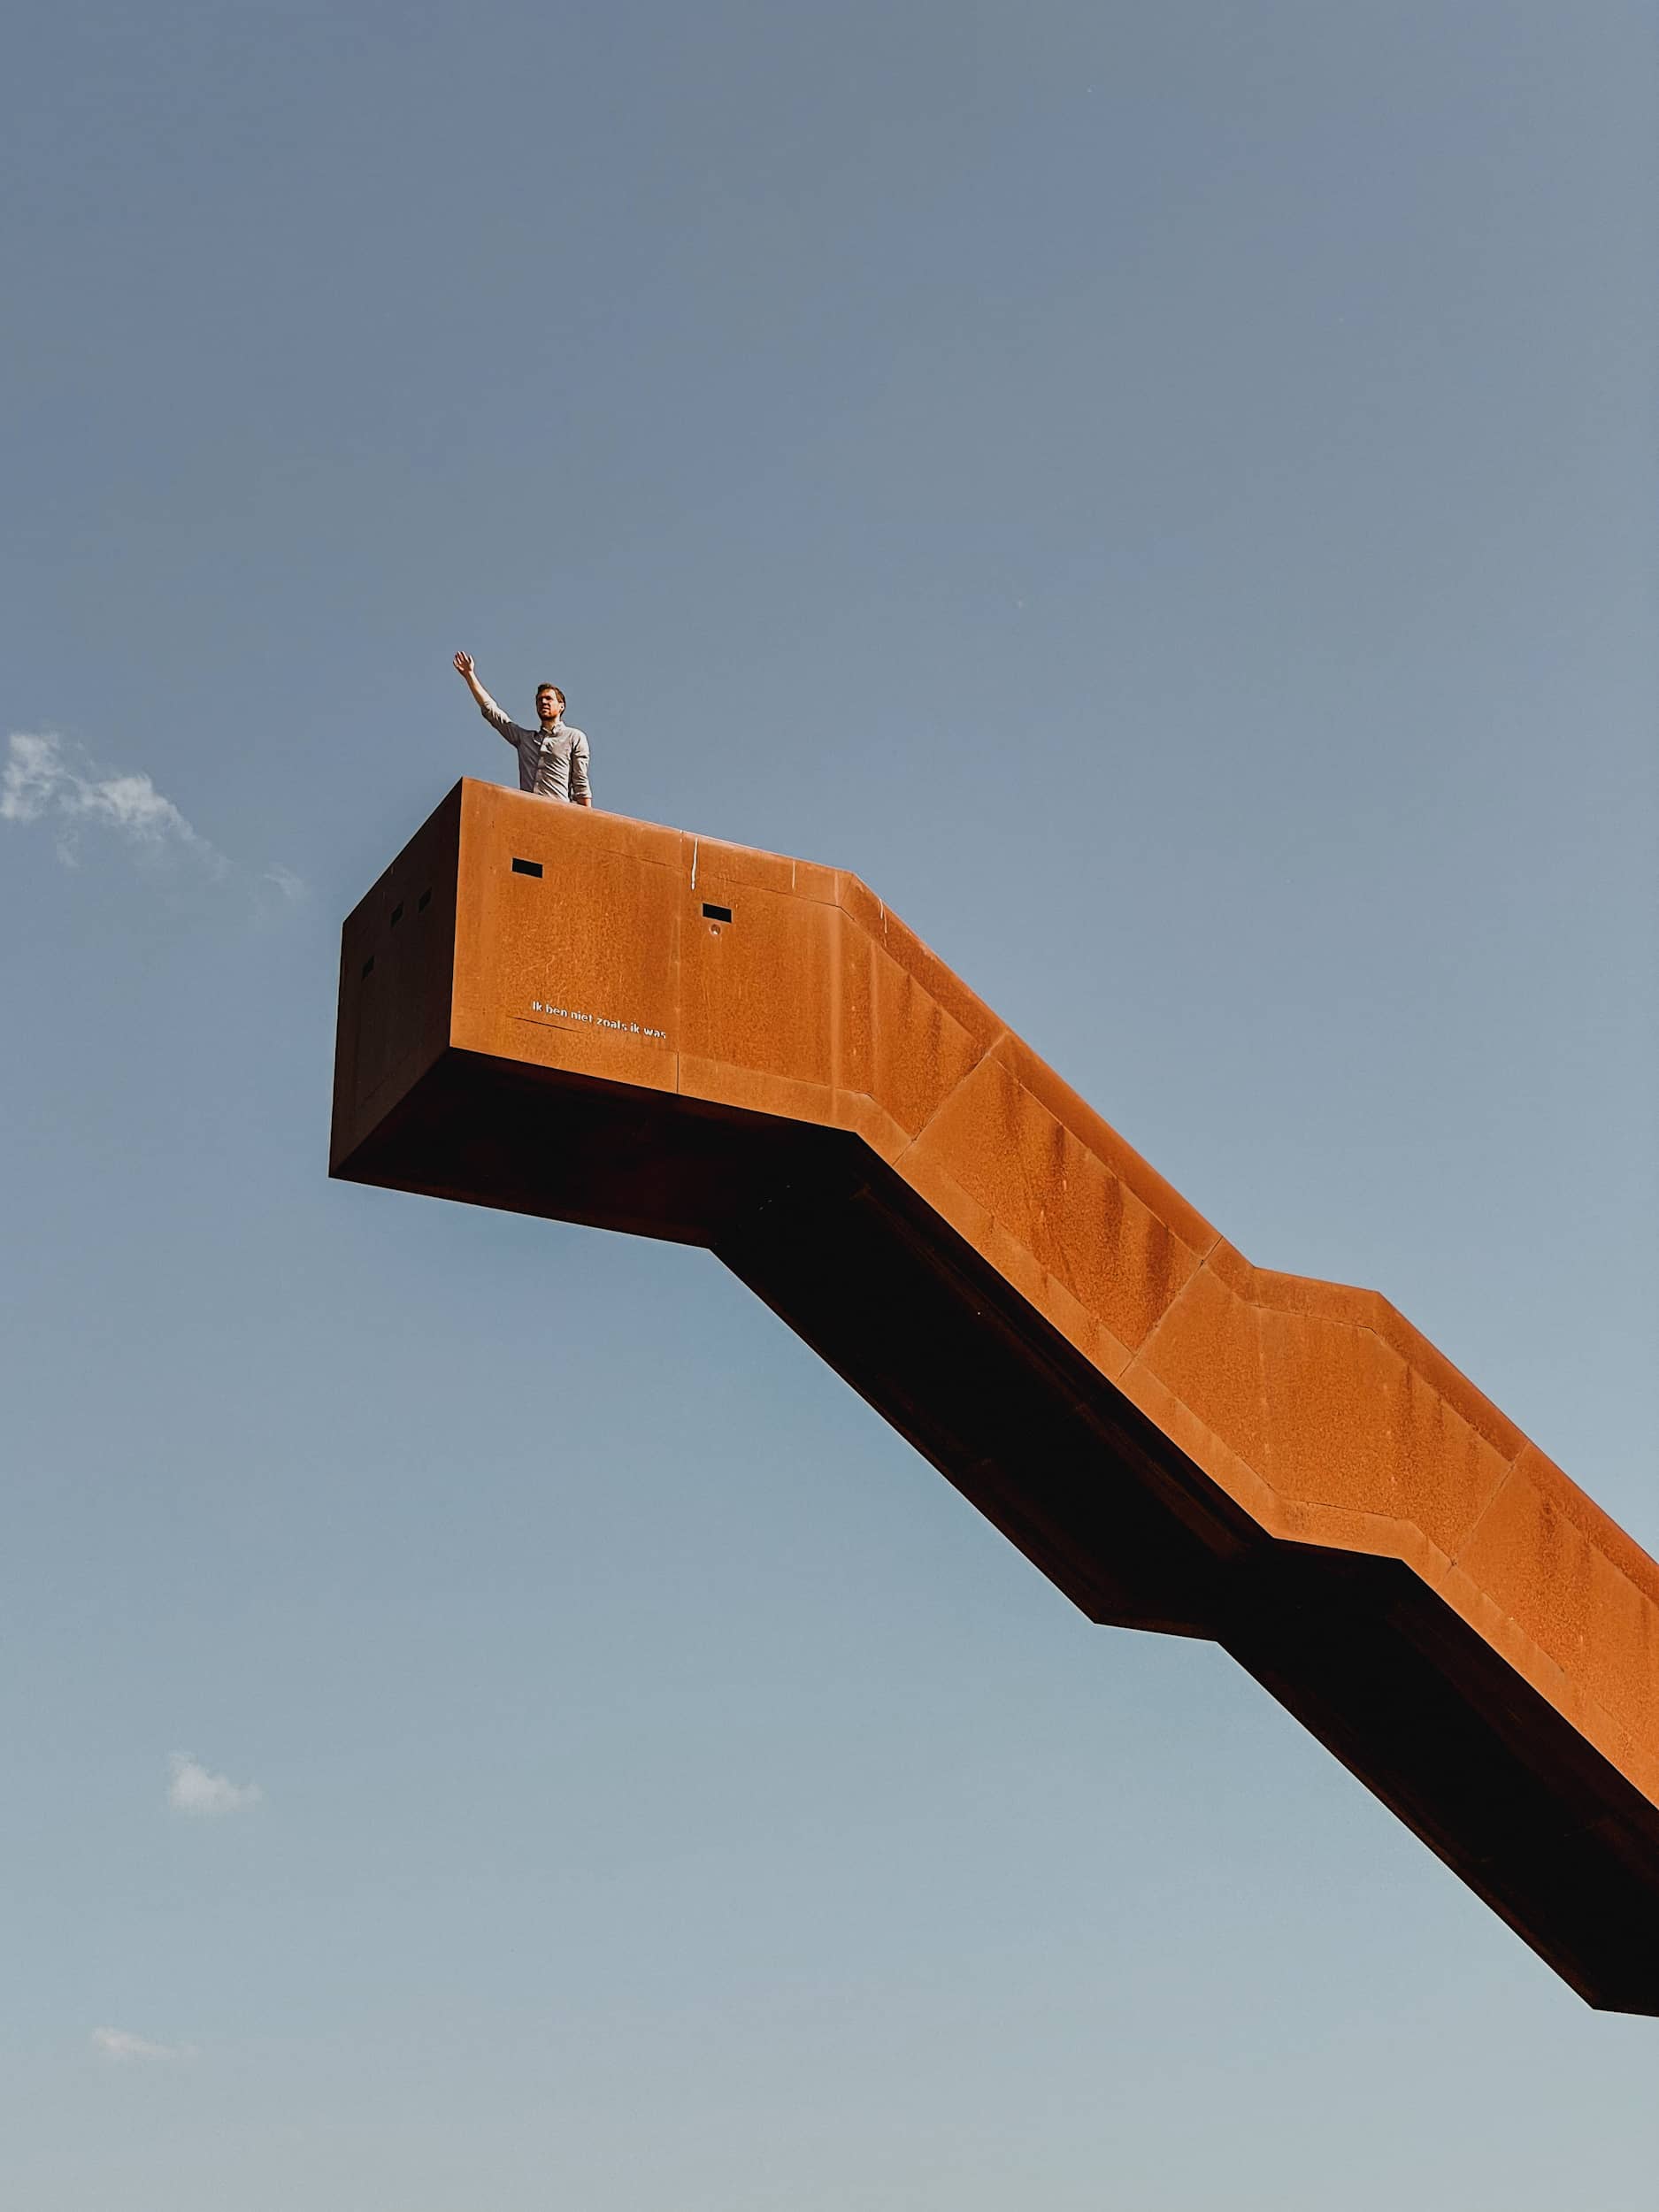 Vlooybergtorenwandeling in Tielt-Winge: tussen kunst en natuur op ontdekkingstocht naar een trappentoren